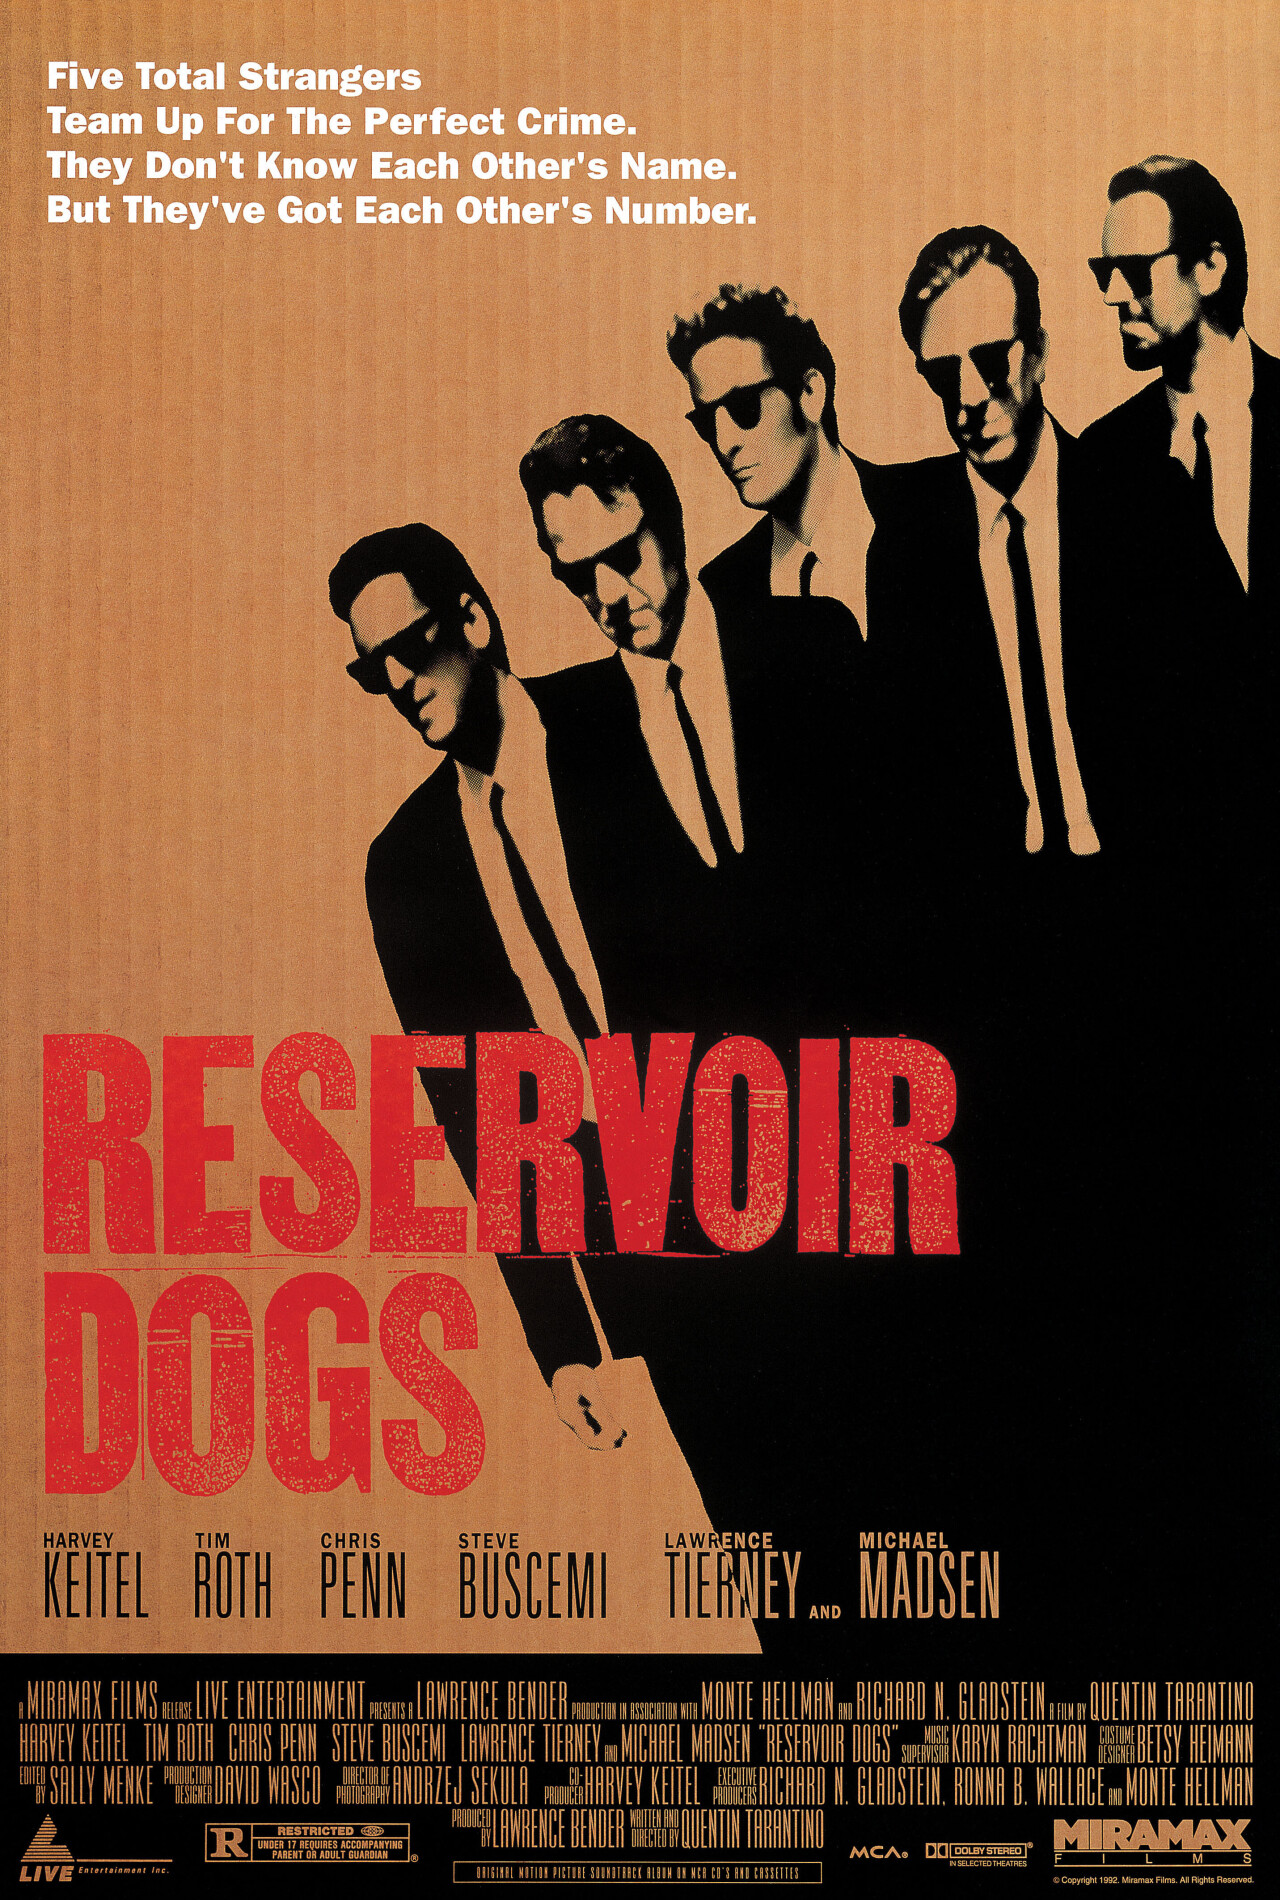 Бешеные псы (Reservoir Dogs, 1992), режиссёр Квентин Тарантино, американский постер к фильму (графический дизайн, 1992 год)